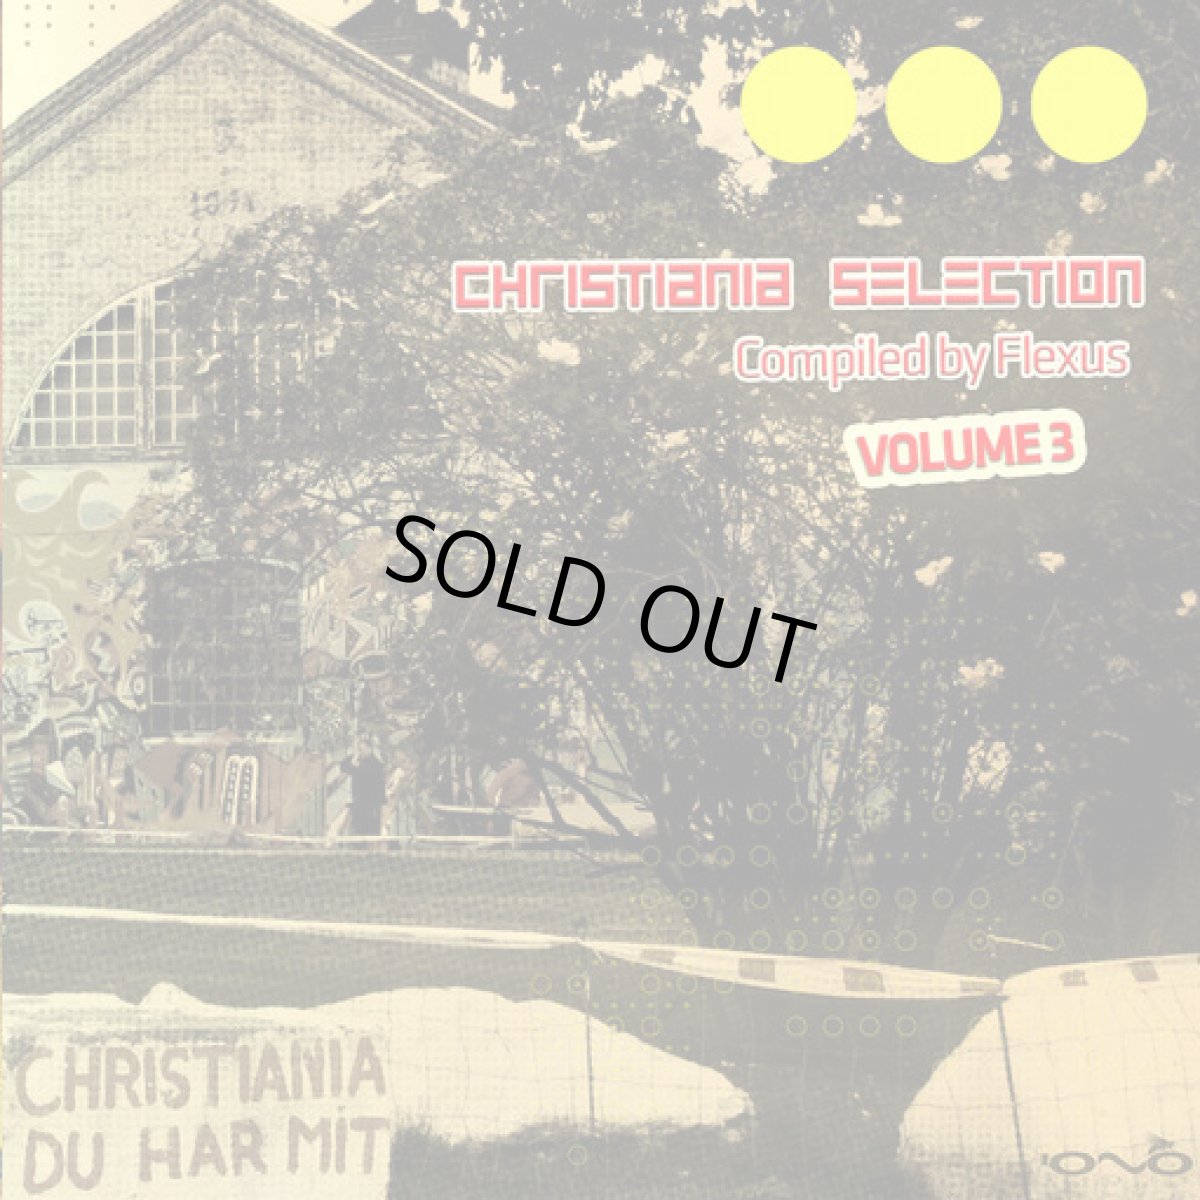 画像1: CD「V.A. / Christiania Selection Vol 3」【プログレッシブトランス】 (1)